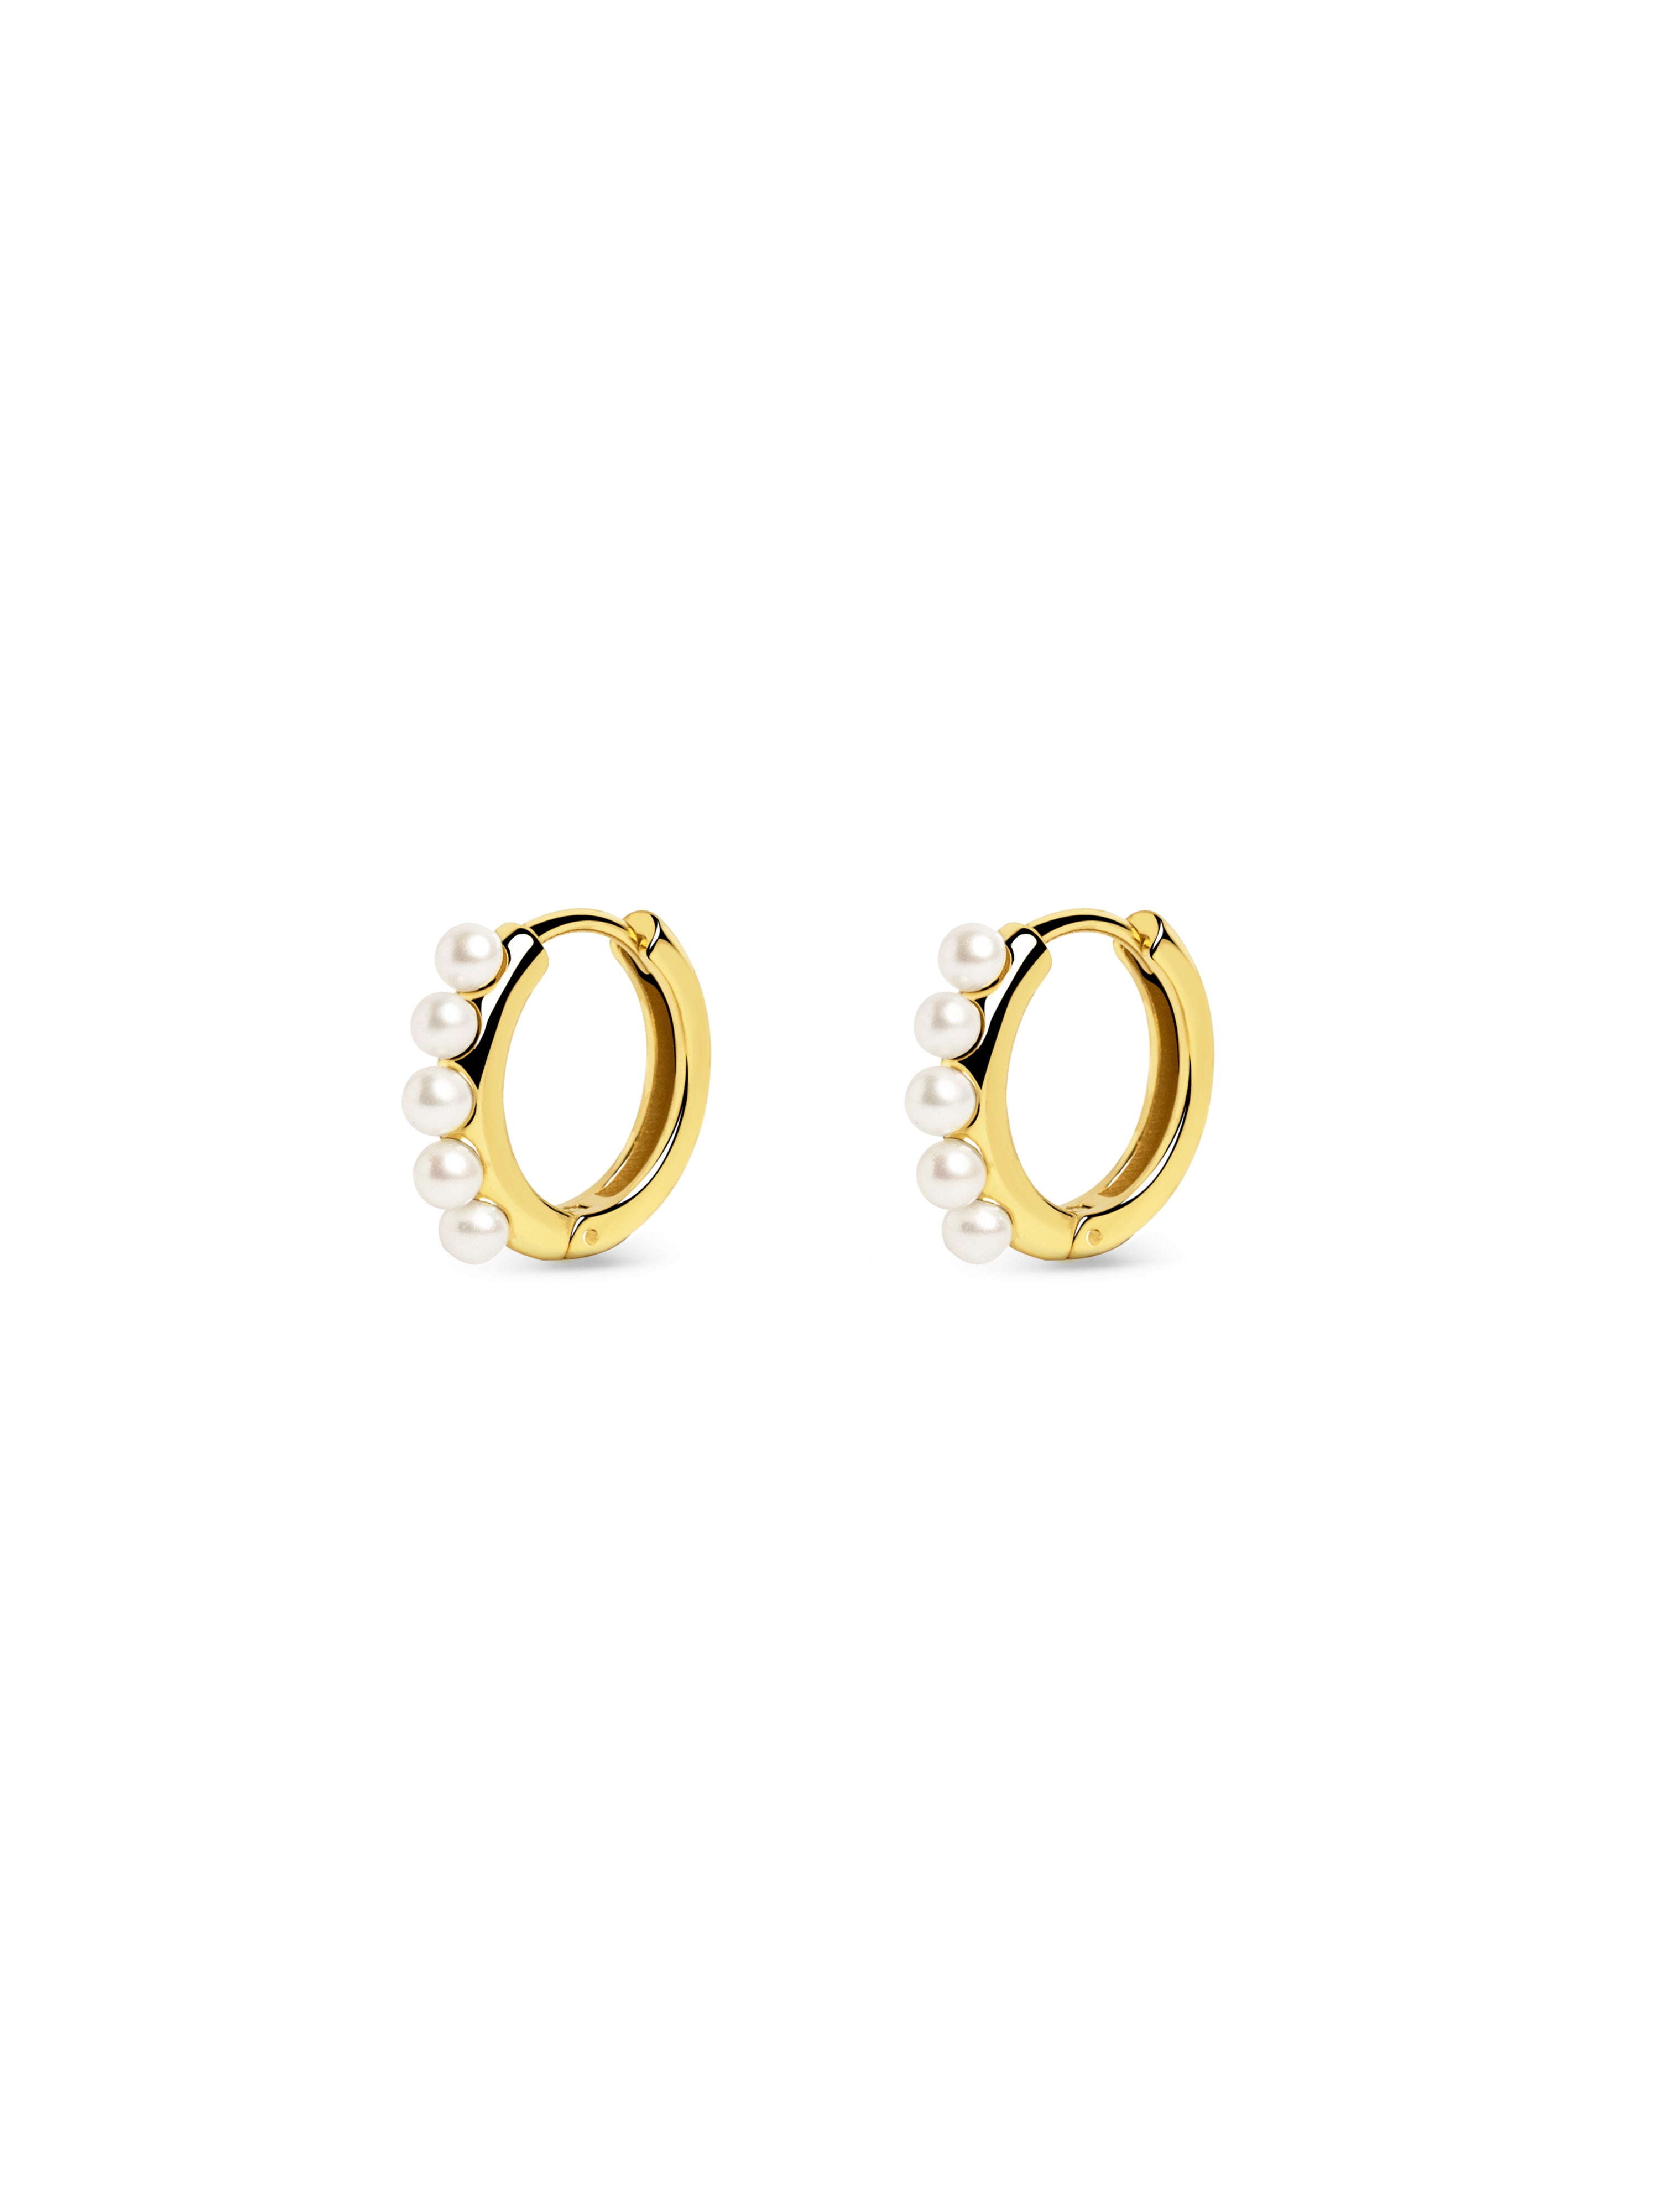 5 Pearls Gold Hoop Earrings